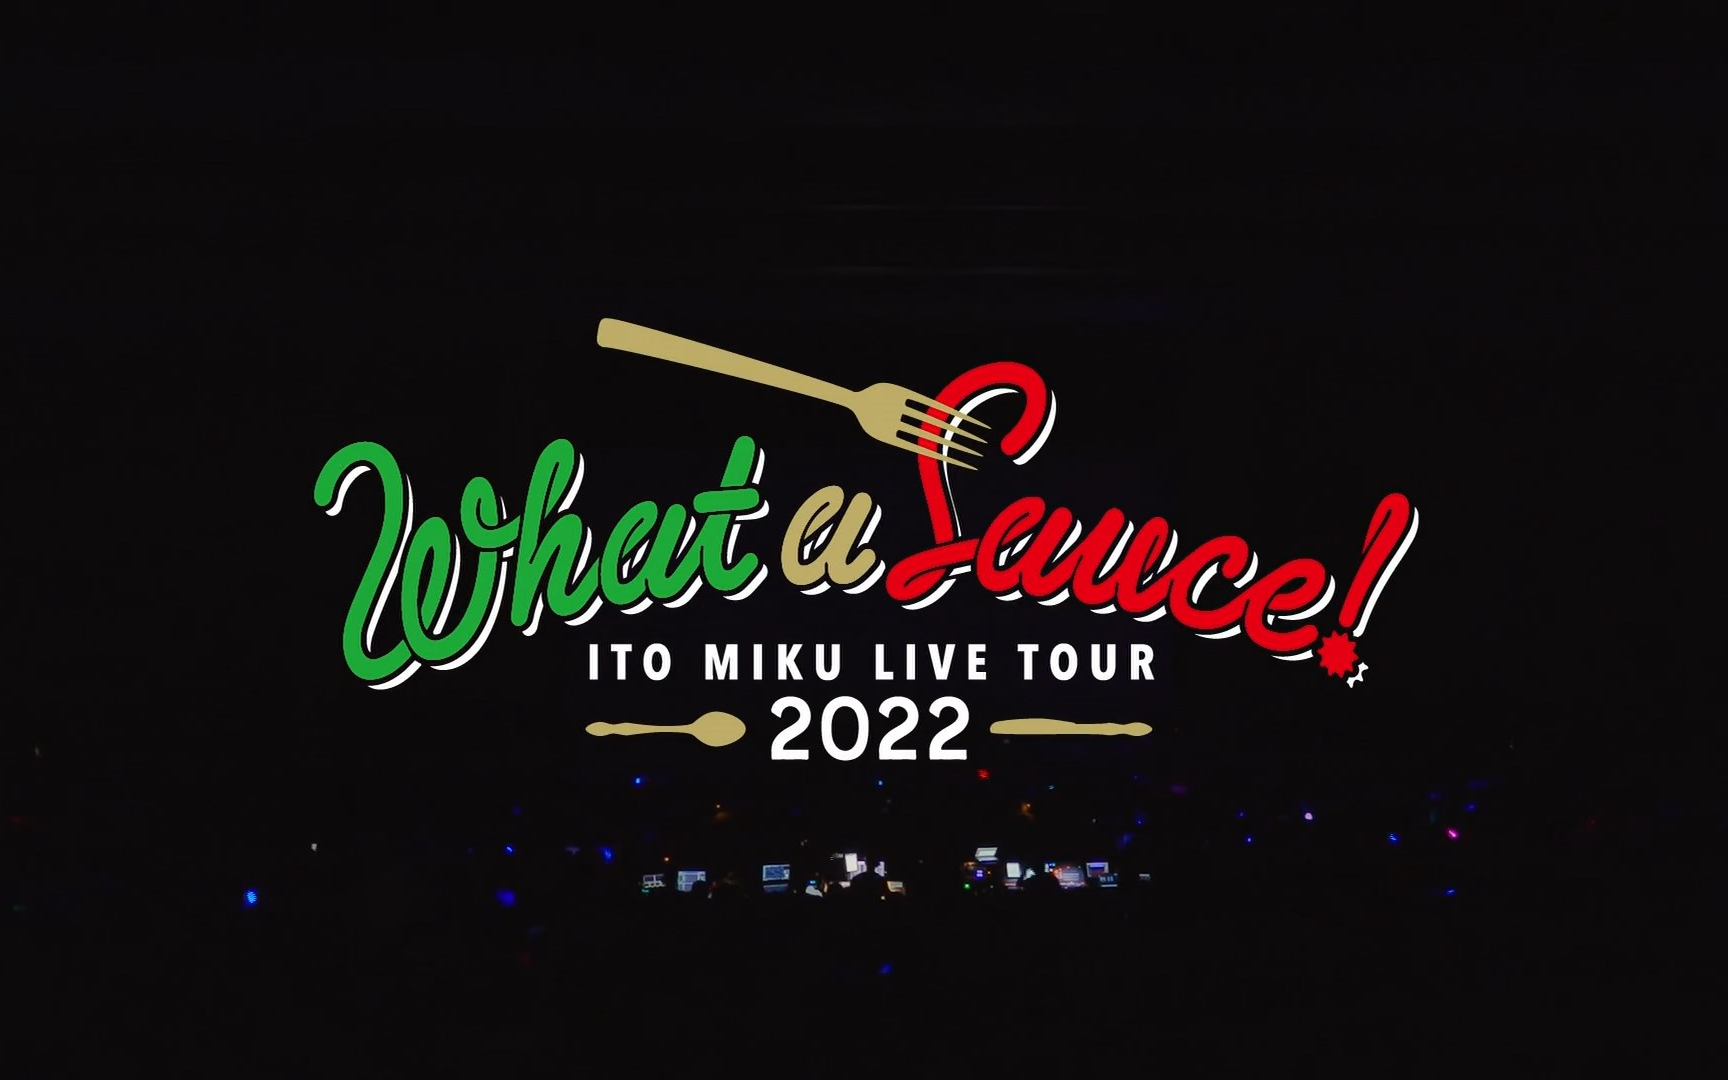 伊藤美来ITO MIKU Live Tour 2022『What a Sauce!』-哔哩哔哩